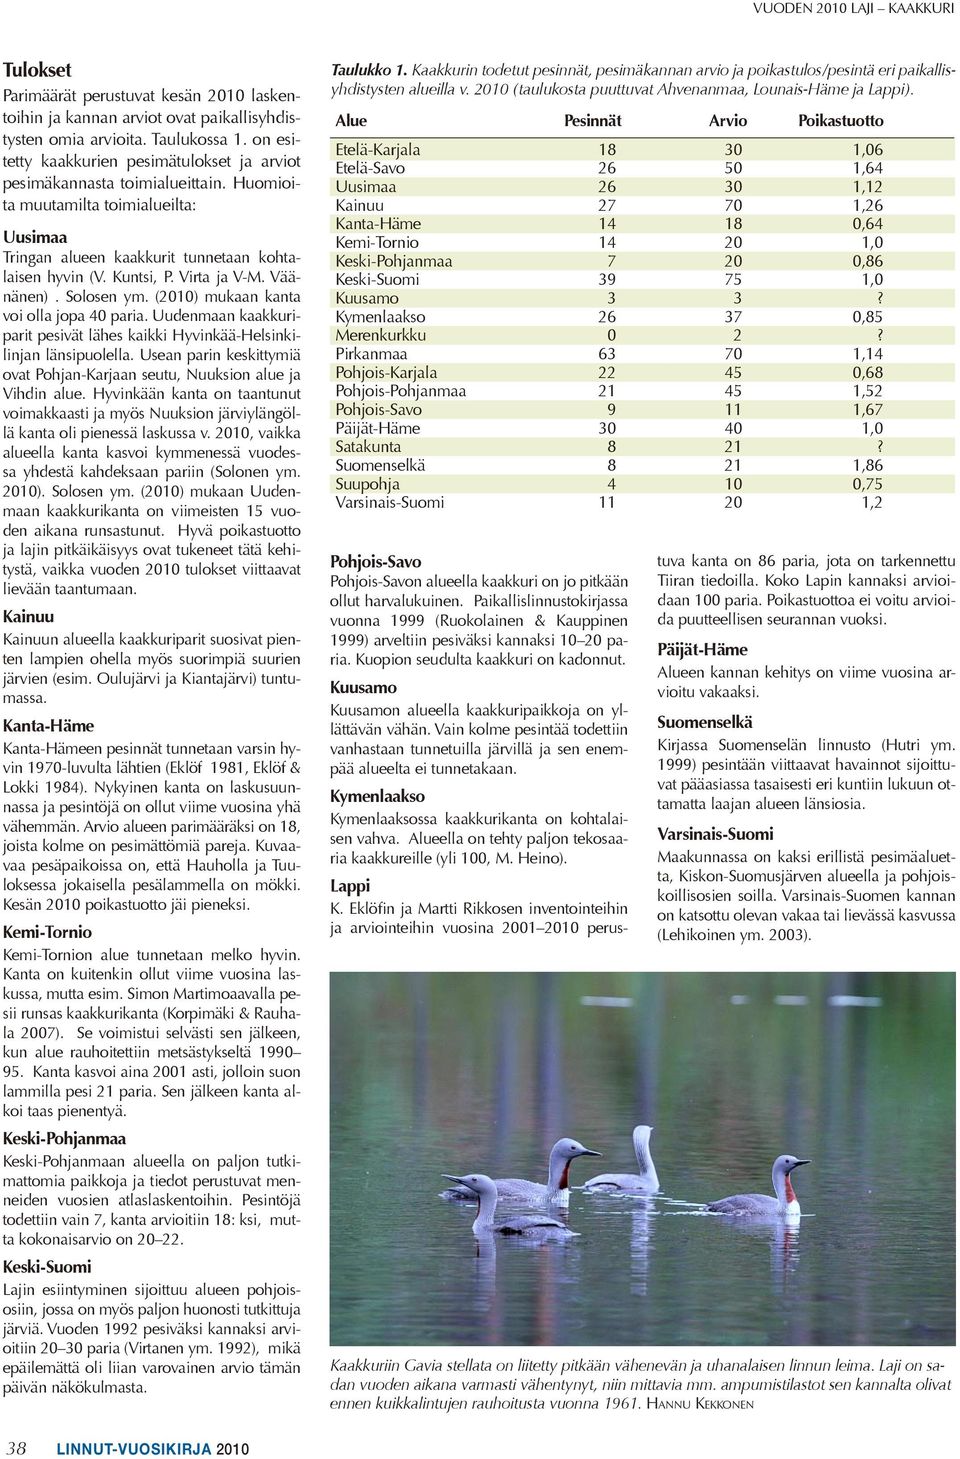 Virta ja V-M. Väänänen). Solosen ym. (2010) mukaan kanta voi olla jopa 40 paria. Uudenmaan kaakkuriparit pesivät lähes kaikki Hyvinkää-Helsinkilinjan länsipuolella.